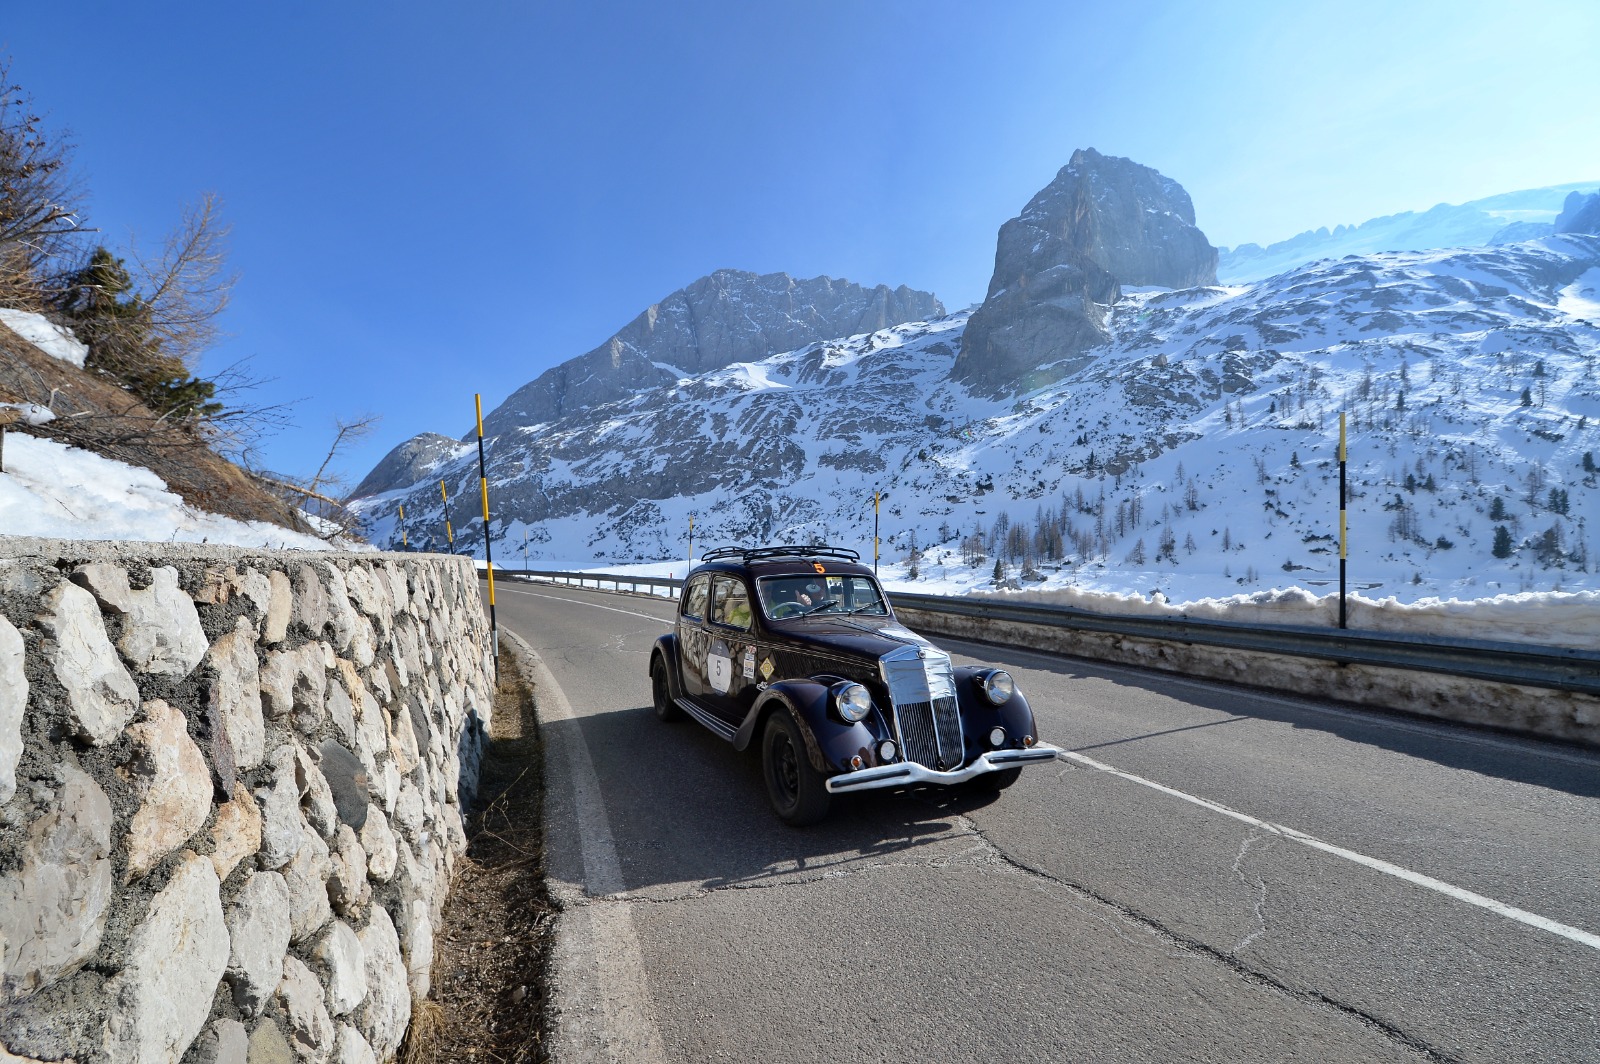 La Lancia Aprilia del 1939 guidata dall'equipaggio Fontanella - Covelli si aggiudica l'edizione 2022 della Coppa delle Alpi.